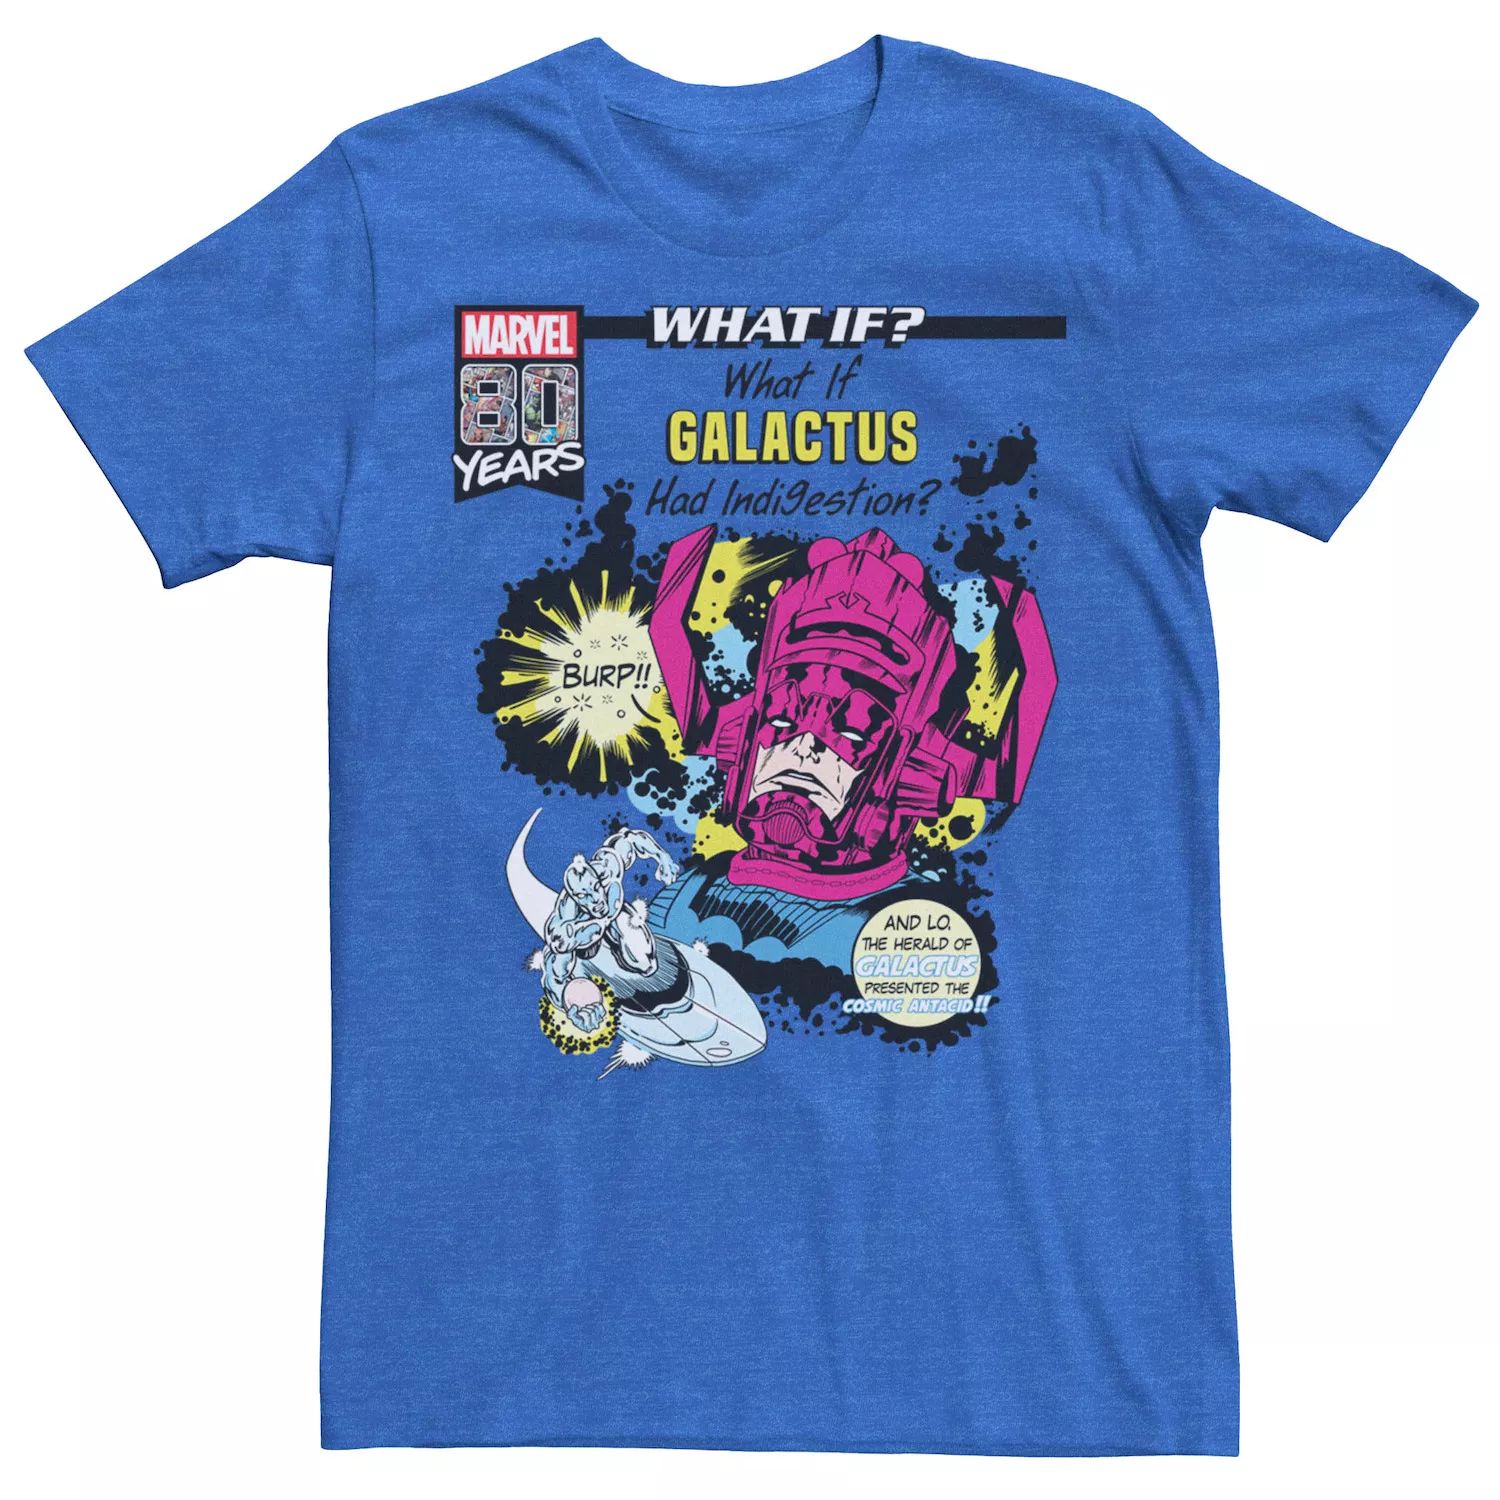 Мужская футболка с рисунком и обложкой комиксов Marvel «Что, если бы у Галактуса было расстройство желудка» Licensed Character